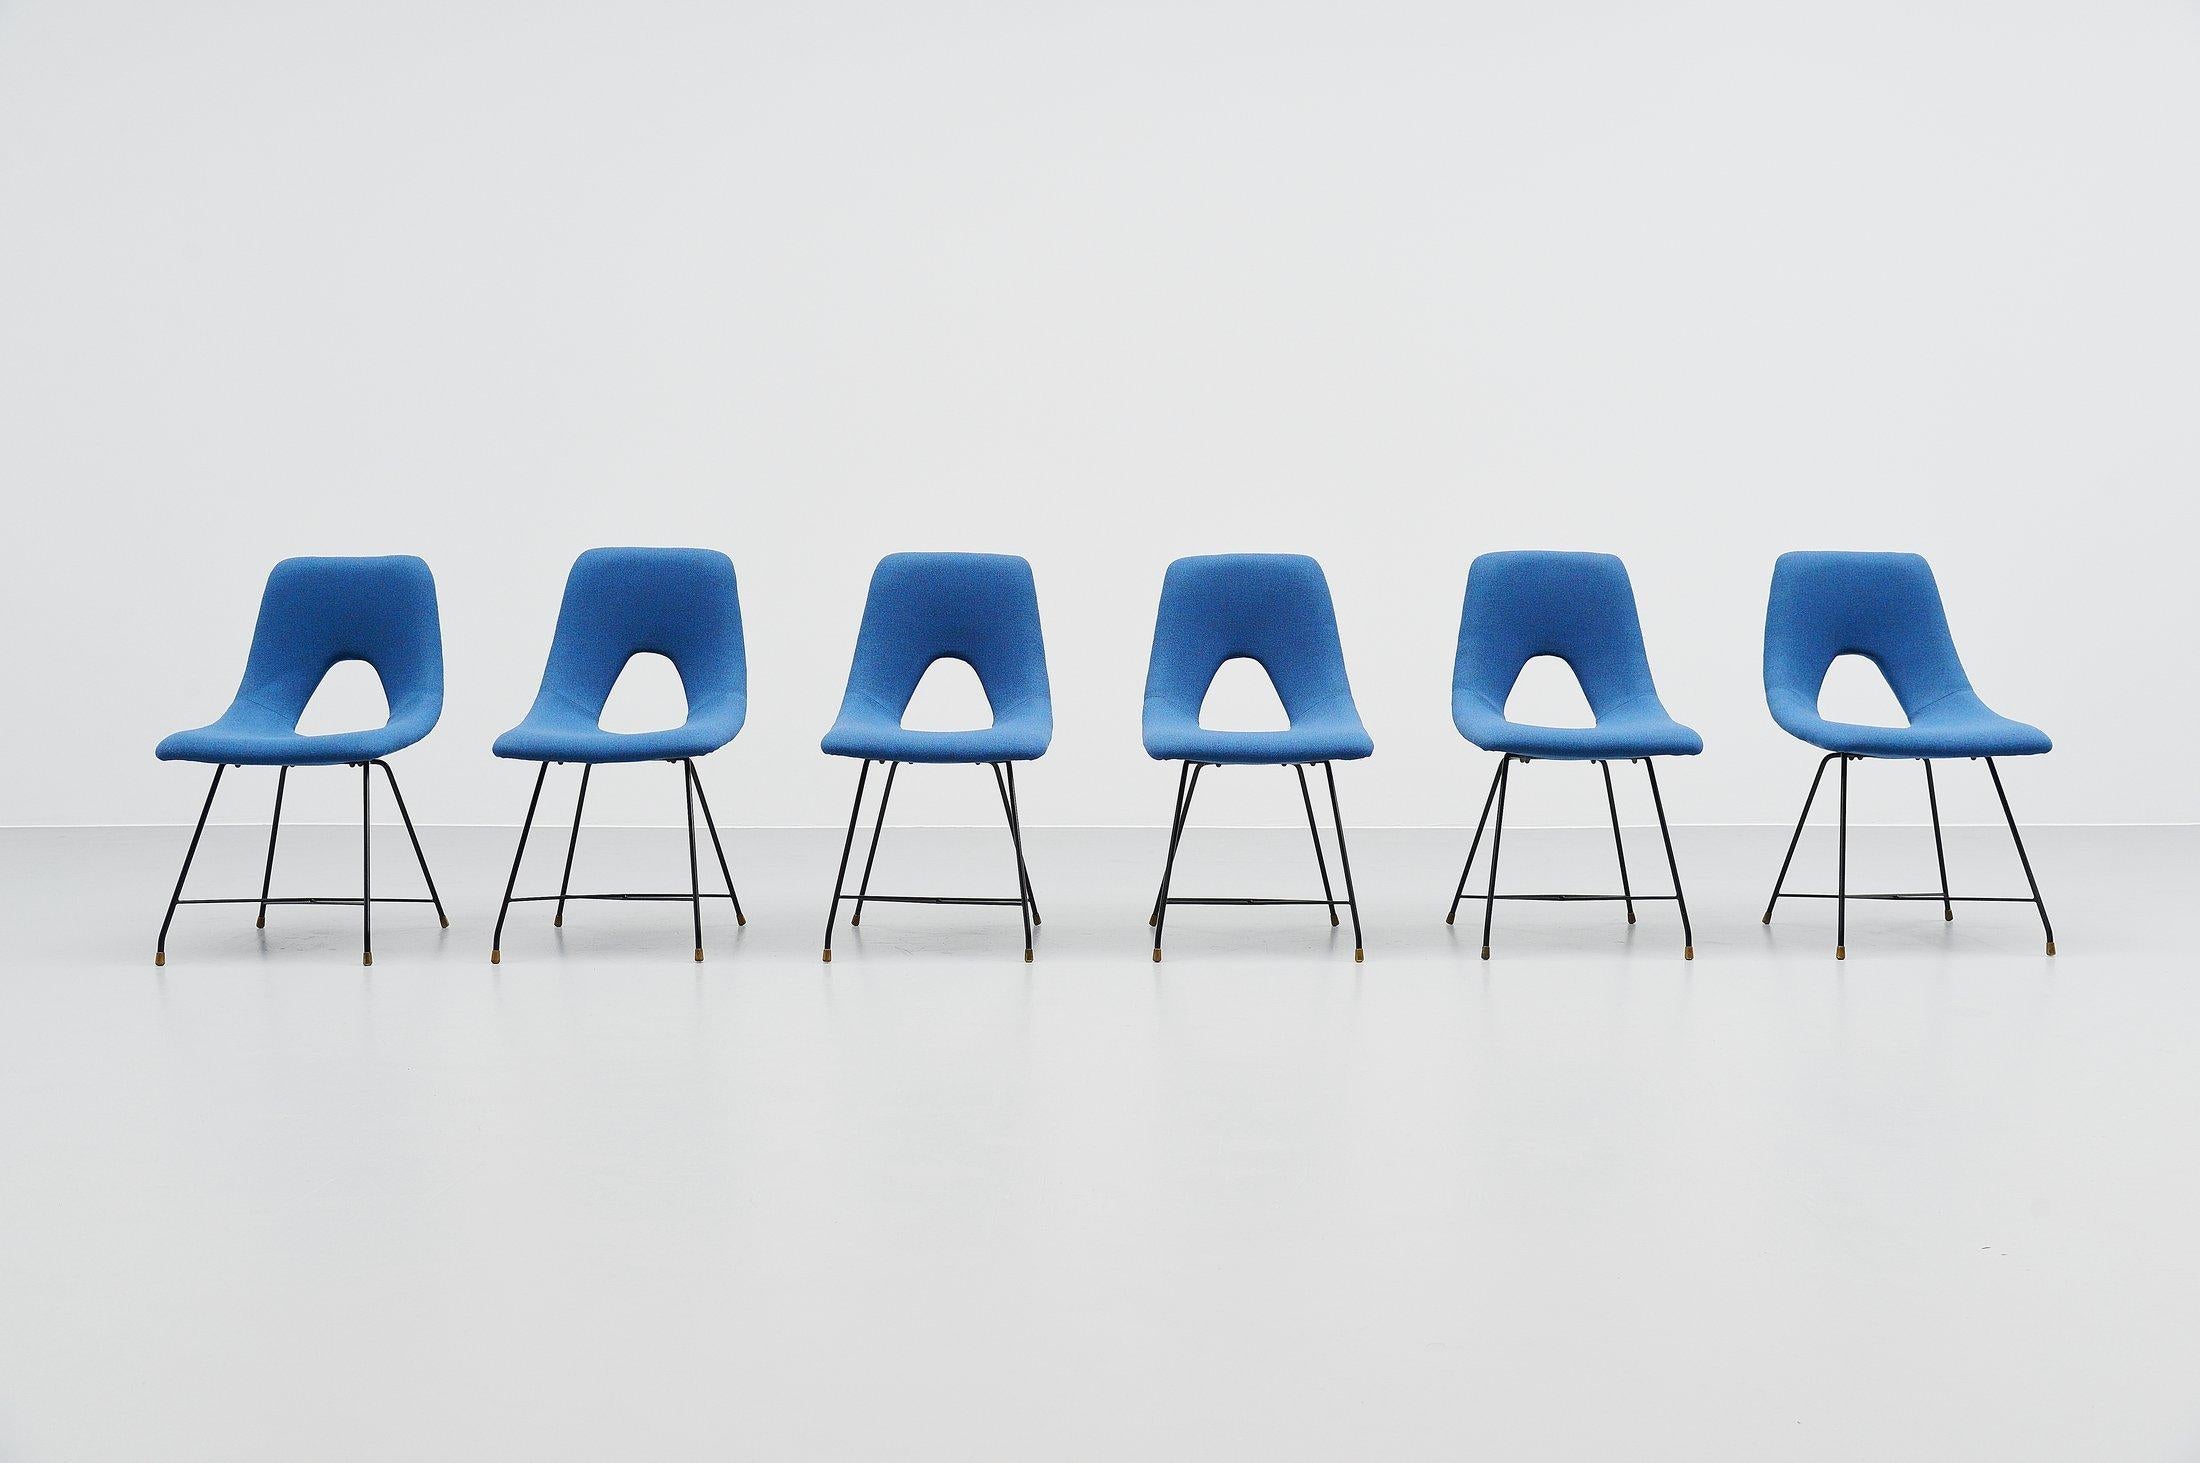 Äußerst seltener Satz von 6 Esszimmerstühlen, entworfen von Augusto Bozzi und hergestellt von Saporiti, Italien 1954. Diese Stühle haben ein schwarz lackiertes Metalldrahtgestell mit Messingfüßen. Die Stühle sind neu mit dem blauen Stoff 'Flora' von